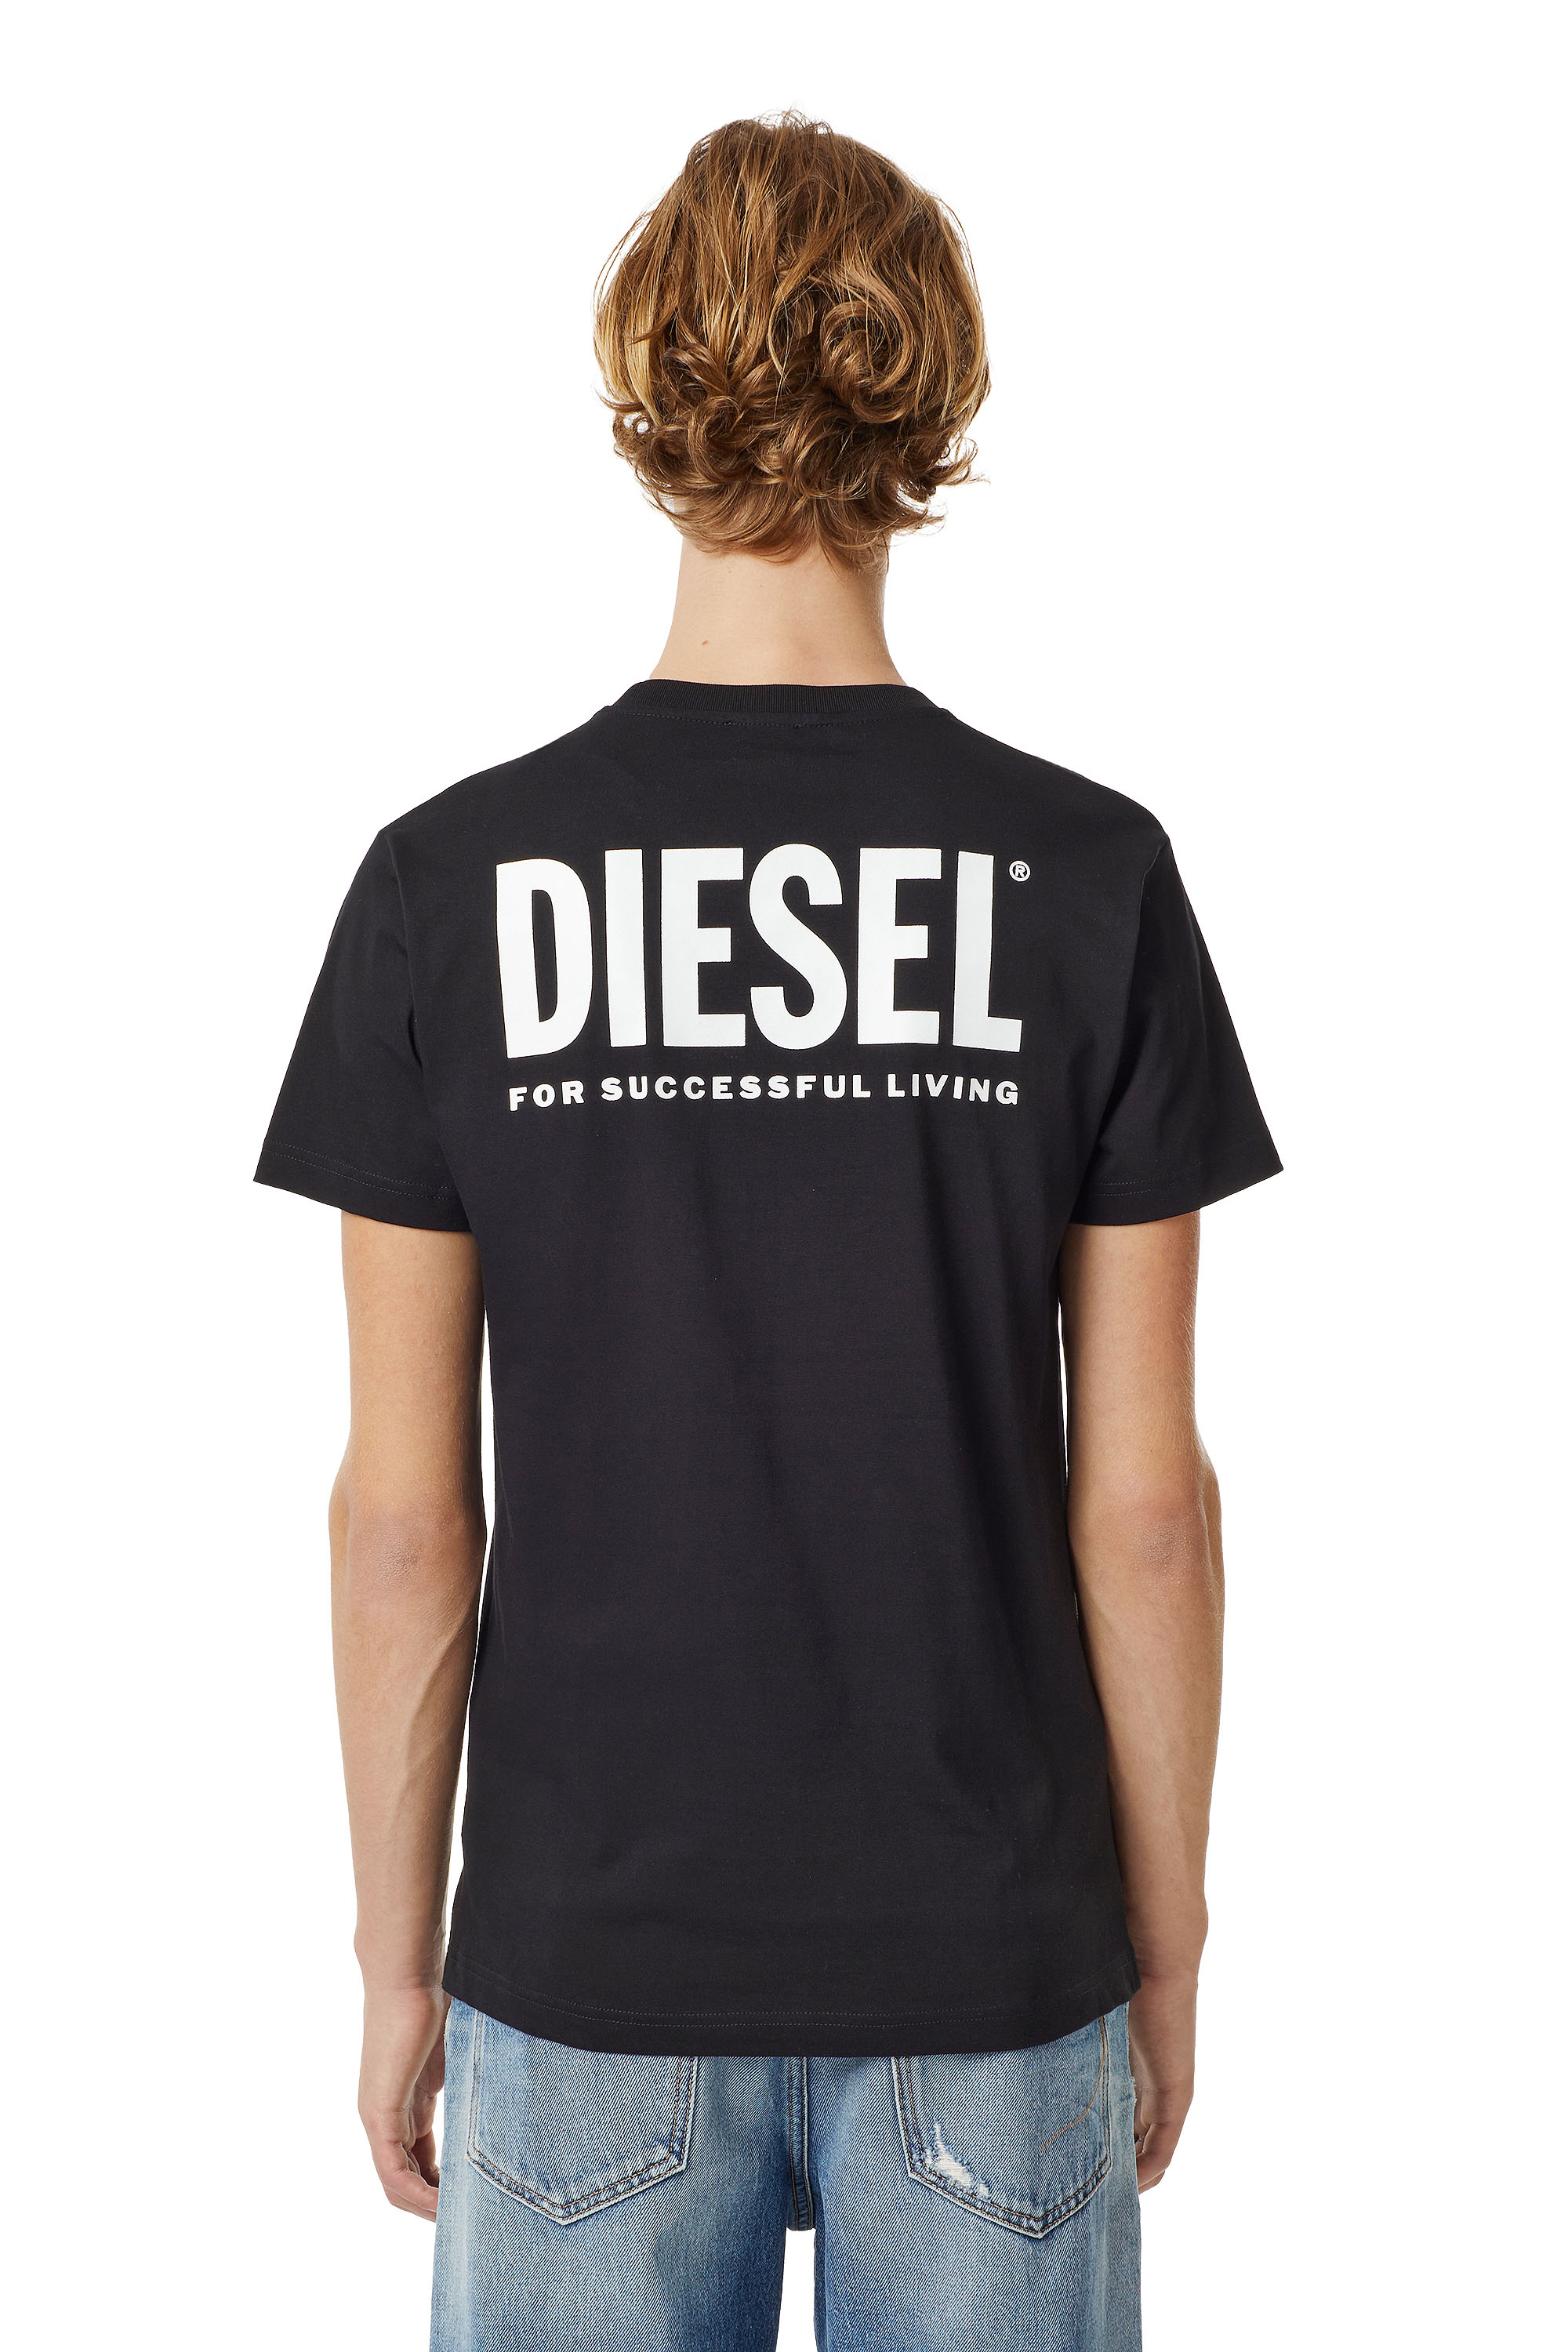 Diesel - LR-T-DIEGO-VIC, Black - Image 3